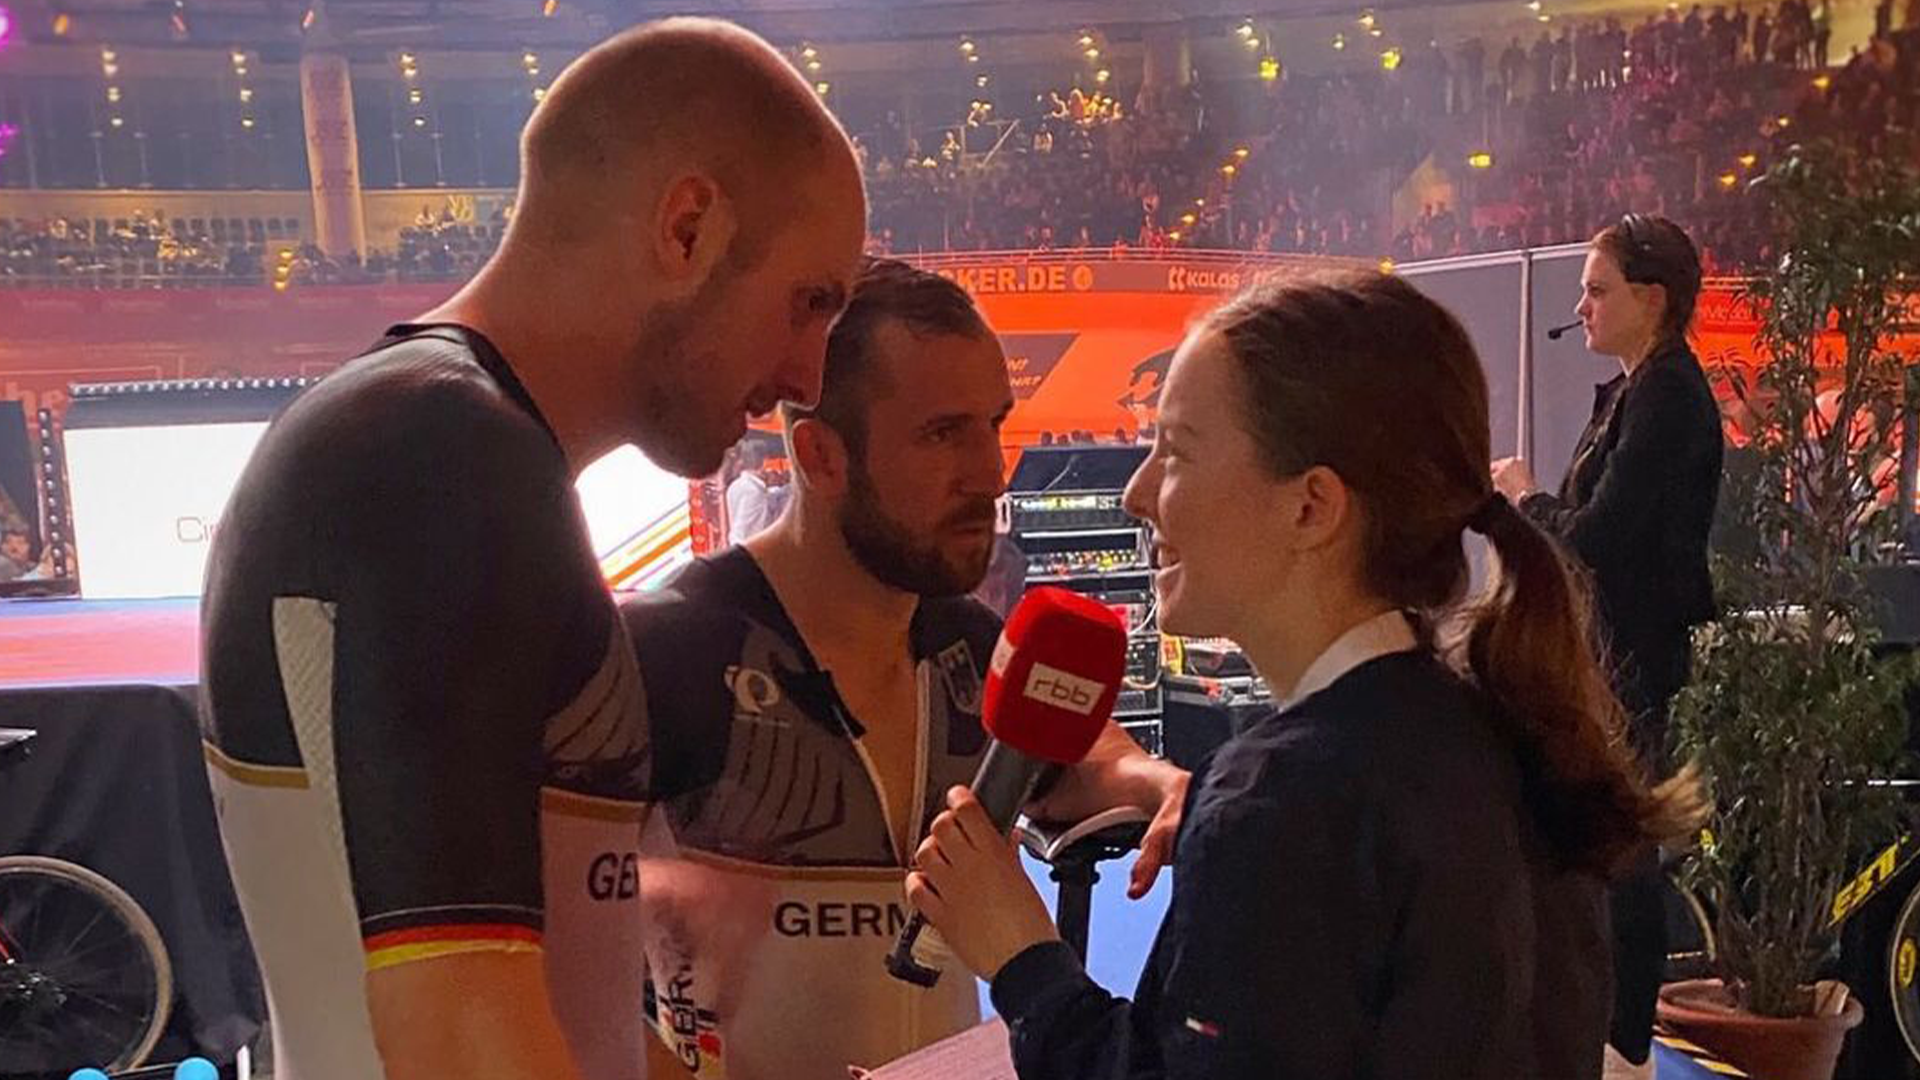 Junge Frau mit rbb-Mikrofon interviewt beim Berliner Sechstagerennen zwei Radsportler.